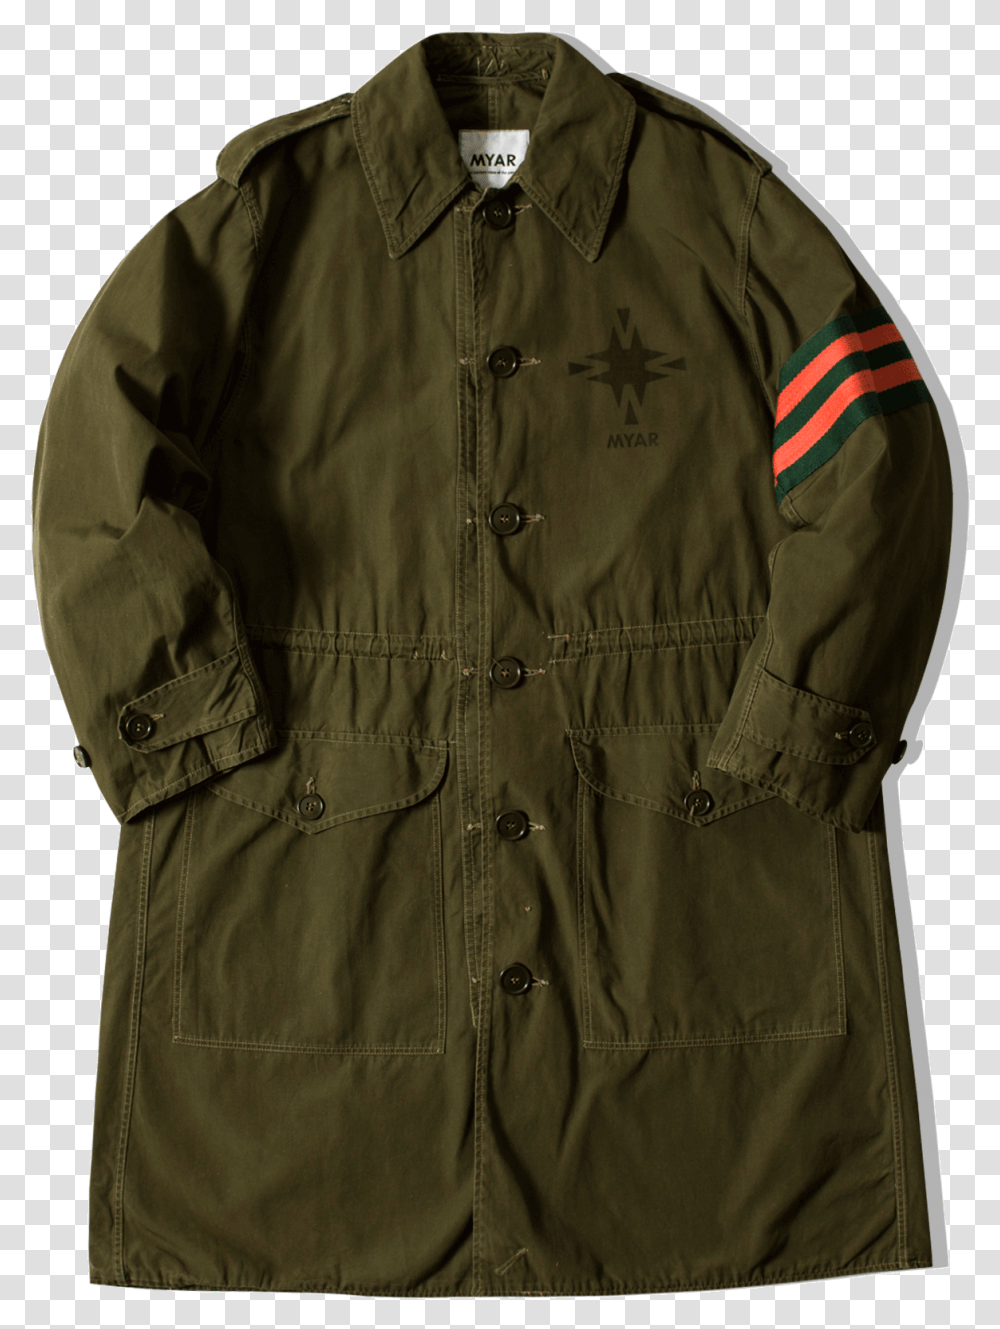 Myar Coats Amp Jackets Noc70 Green Noc70 Pocket, Apparel, Khaki, Overcoat Transparent Png